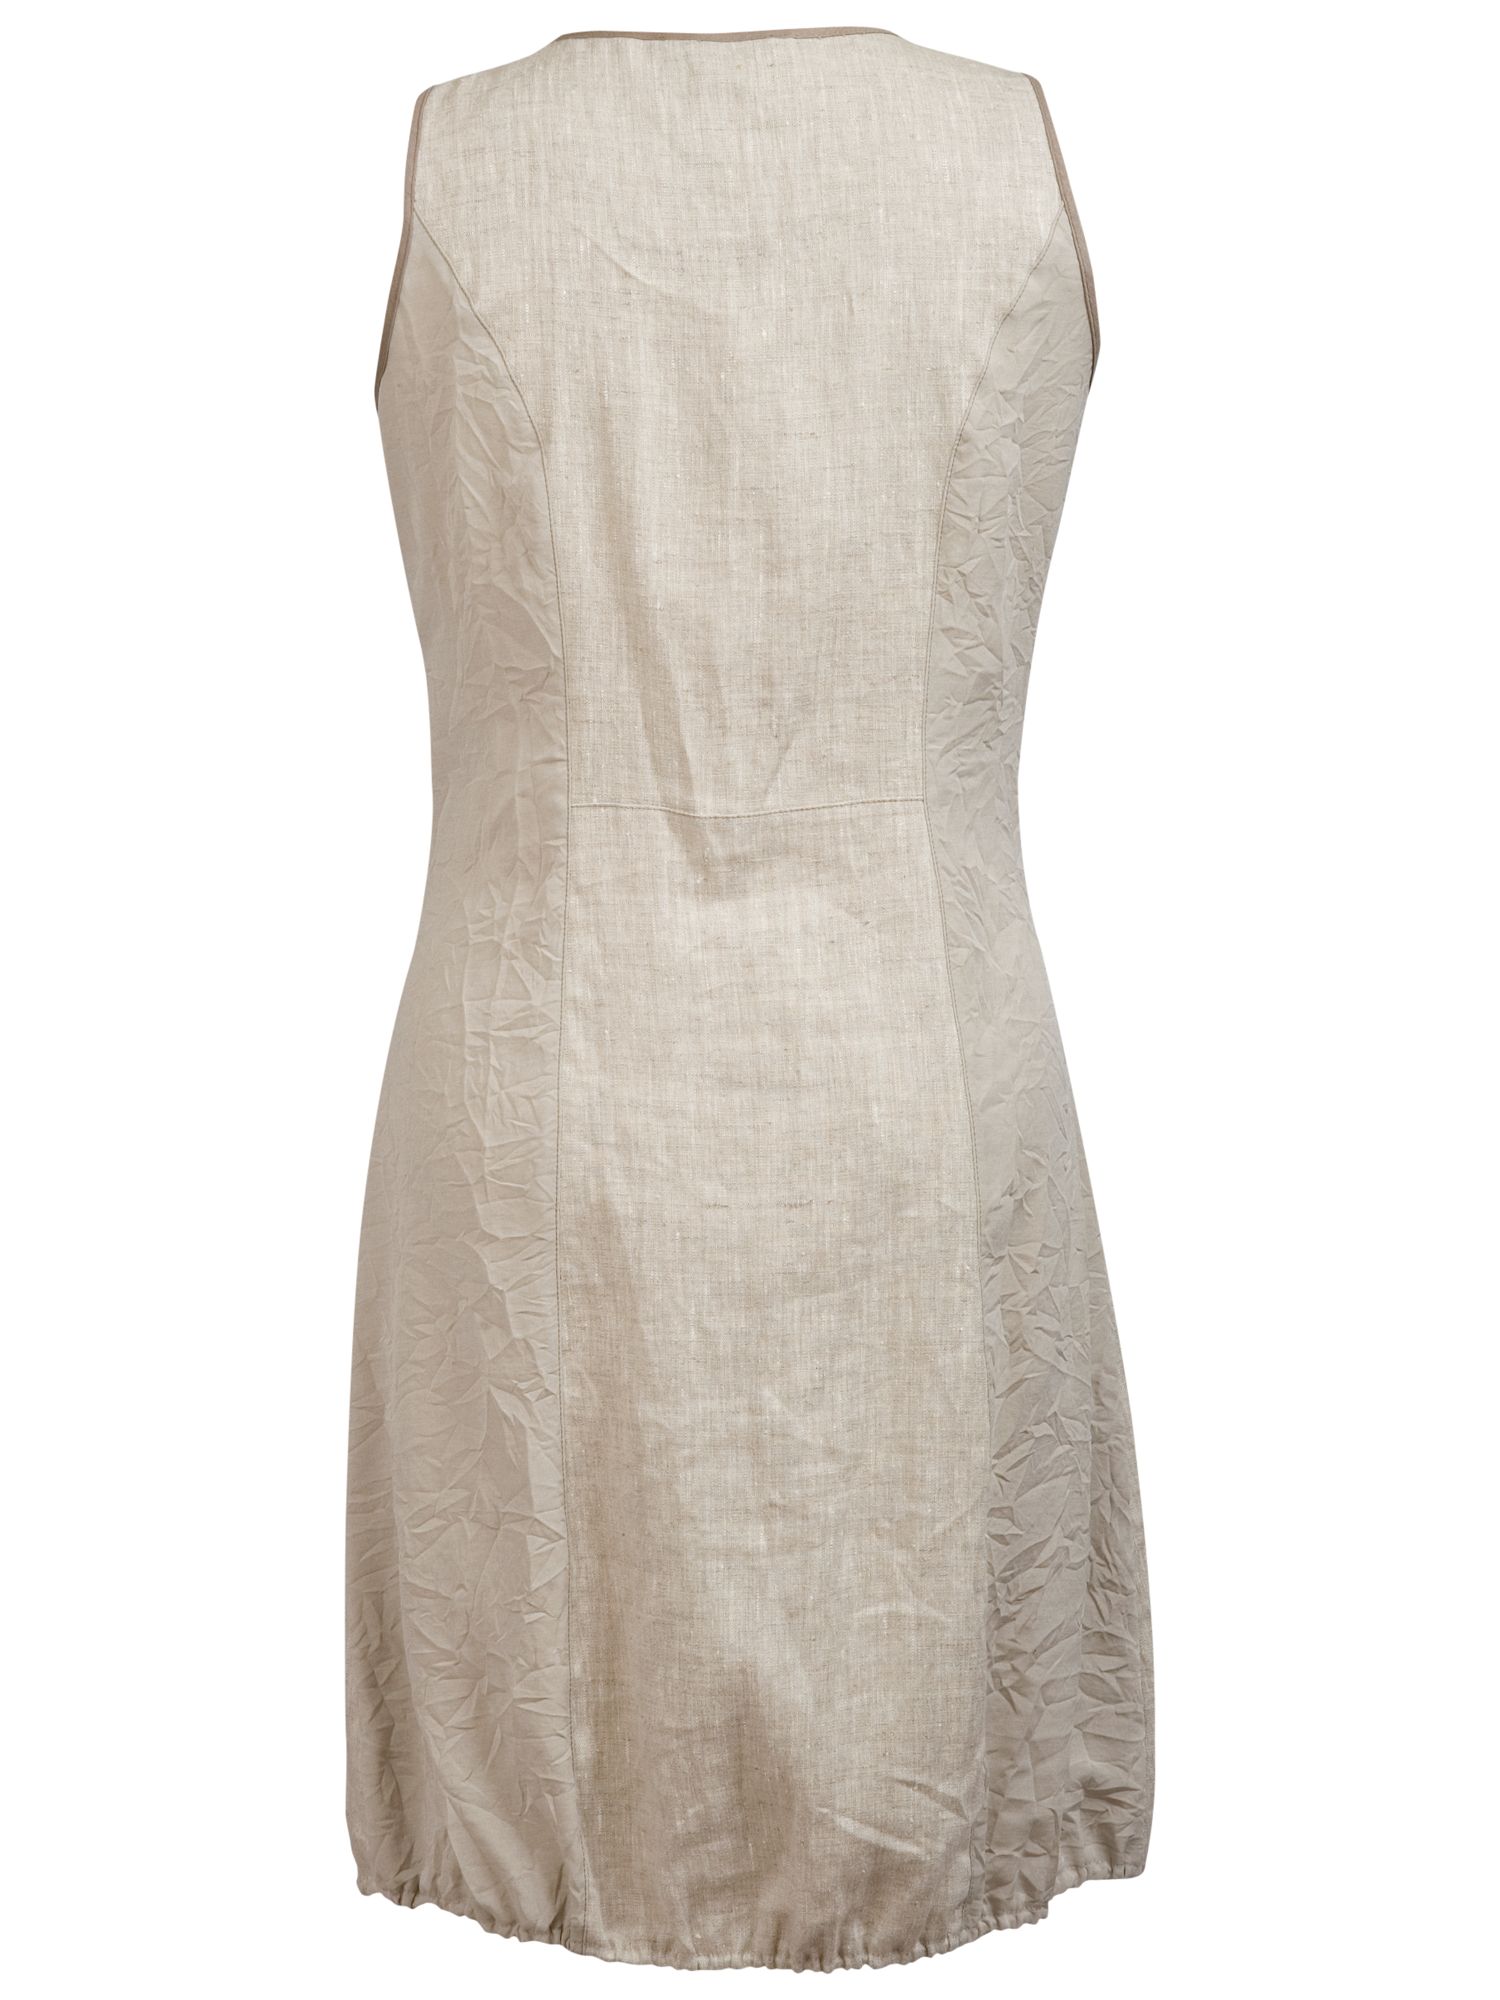 Buy Chesca Linen Zip Dress, Cream Online at johnlewis.com